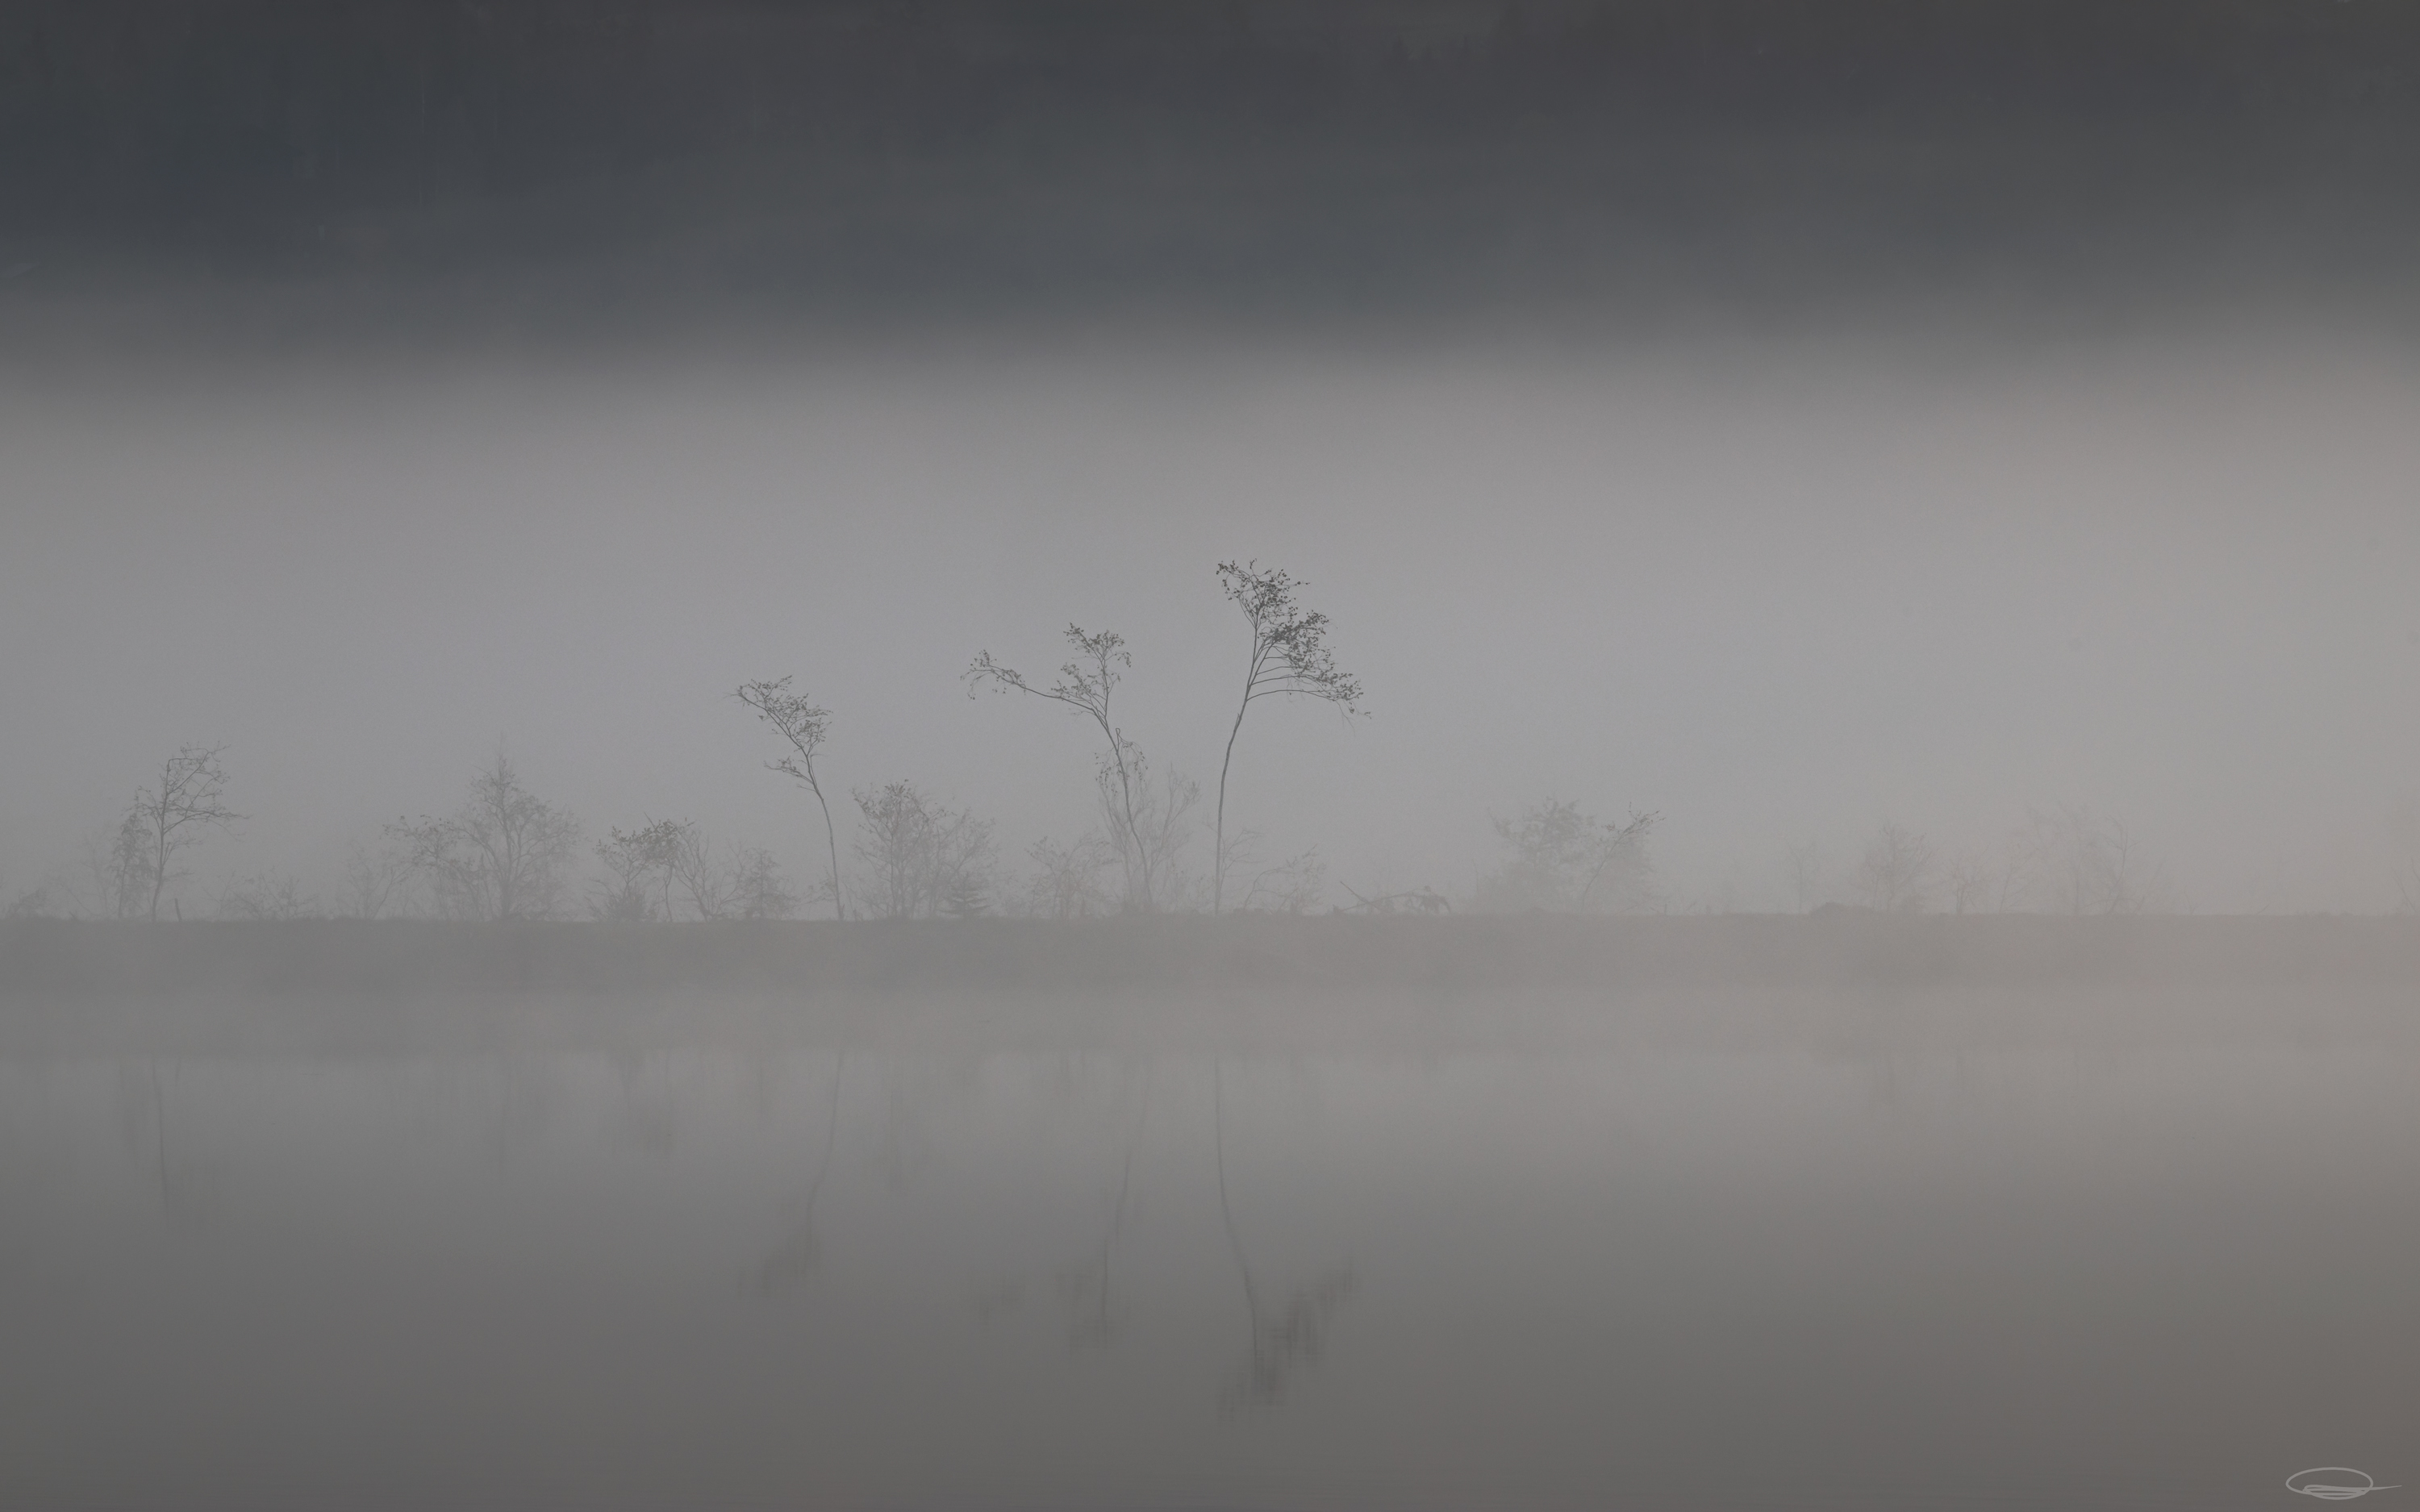 Misty Sunrise at the Reservoir - Johann Piber